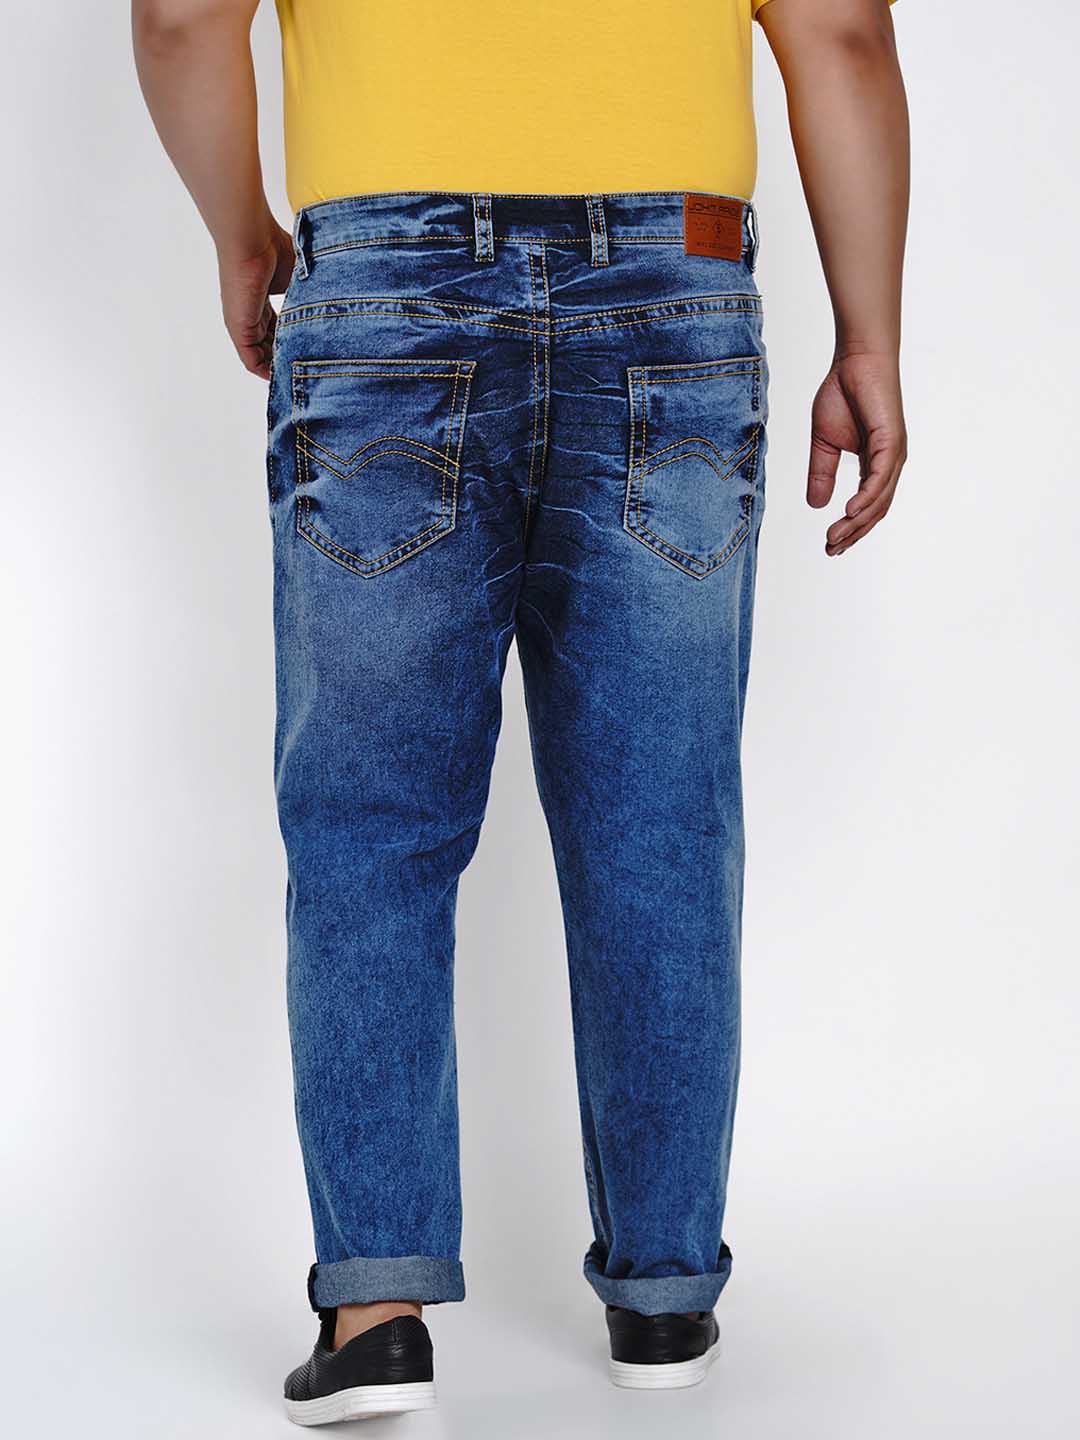 affordables/jeans/JPJ2512/jpj2512-5.jpg